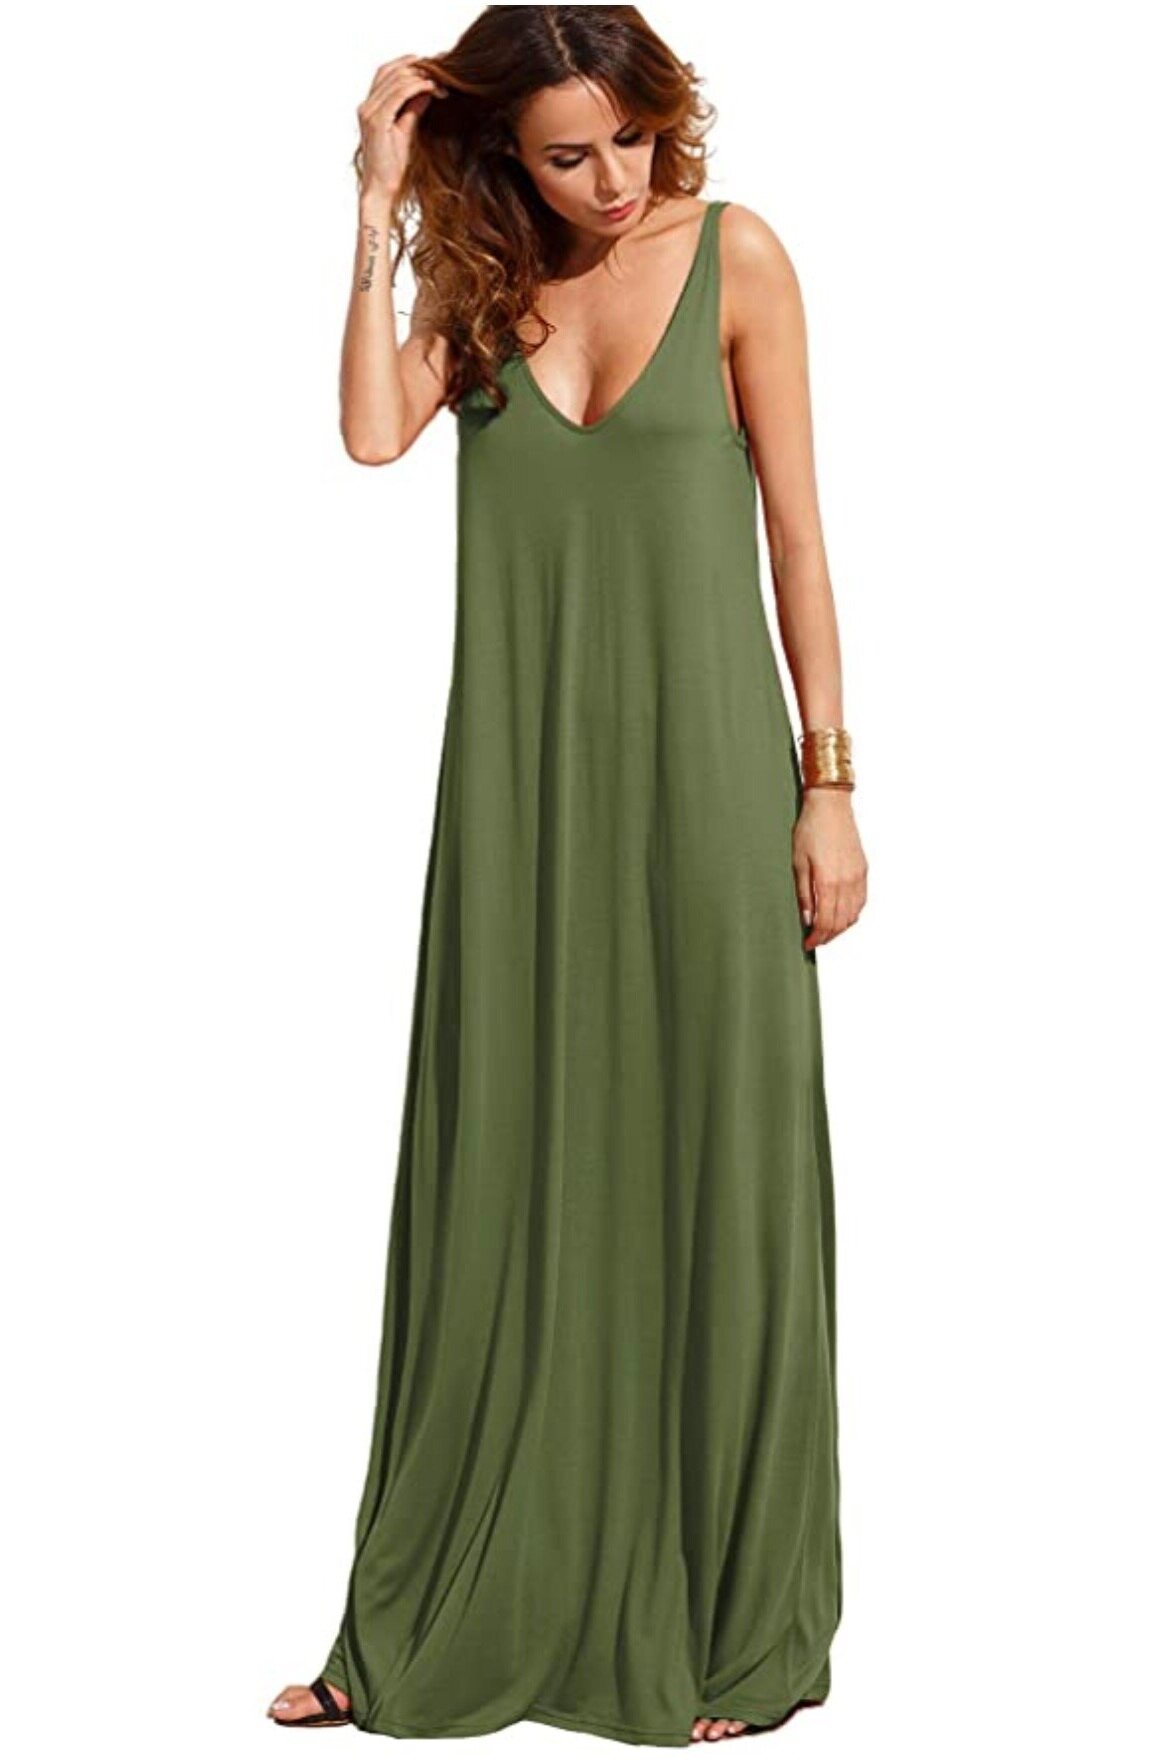 Let's Go Shopping: My Favorite Green Dresses Right Now! — christie ferrari